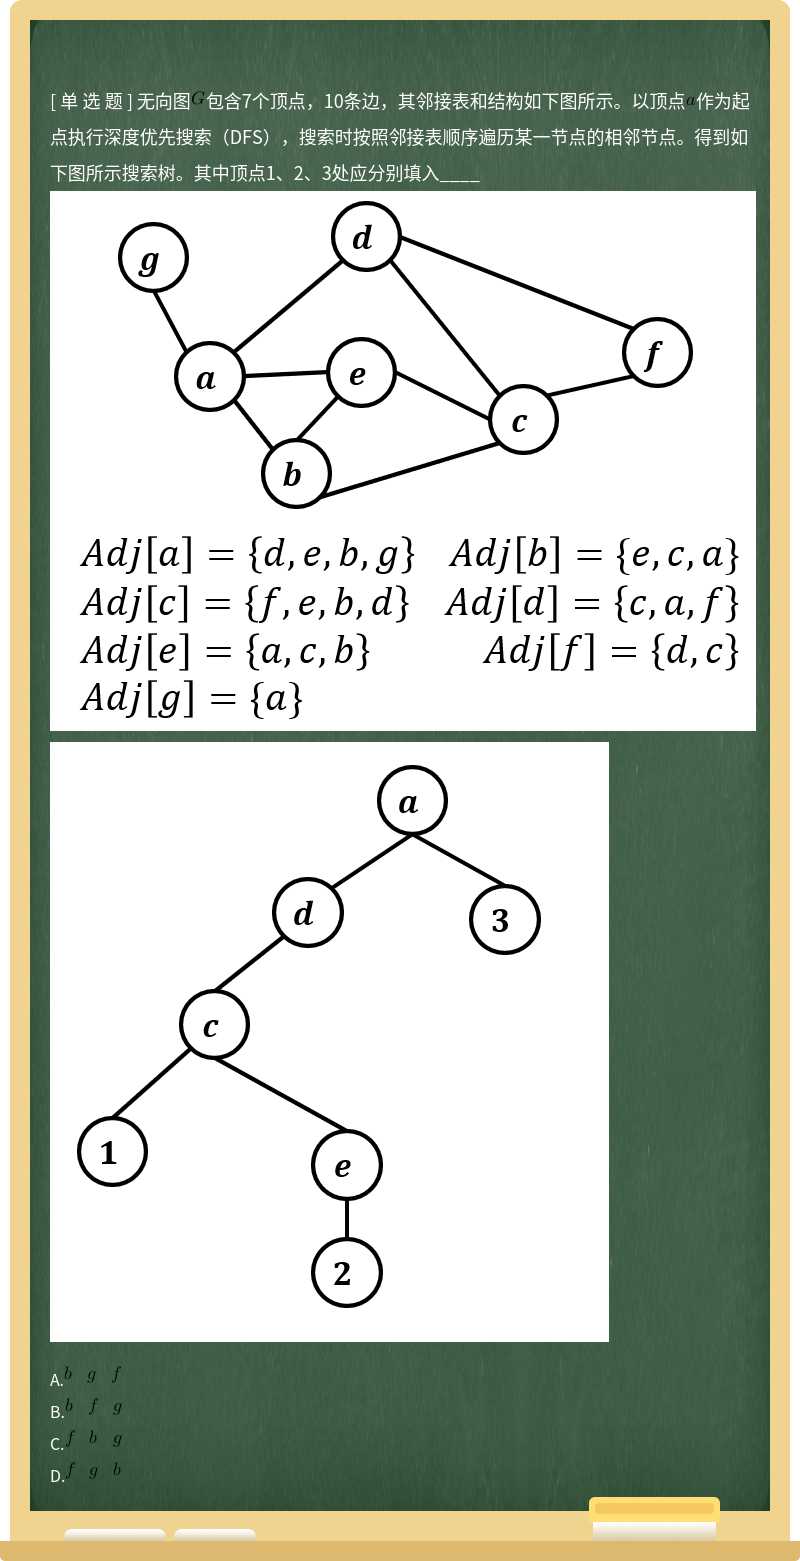 无向图包含7个顶点，10条边，其邻接表和结构如下图所示。以顶点作为起点执行深度优先搜索（DFS），搜索时按照邻接表顺序遍历某一节点的相邻节点。得到如下图所示搜索树。其中顶点1、2、3处应分别填入____  